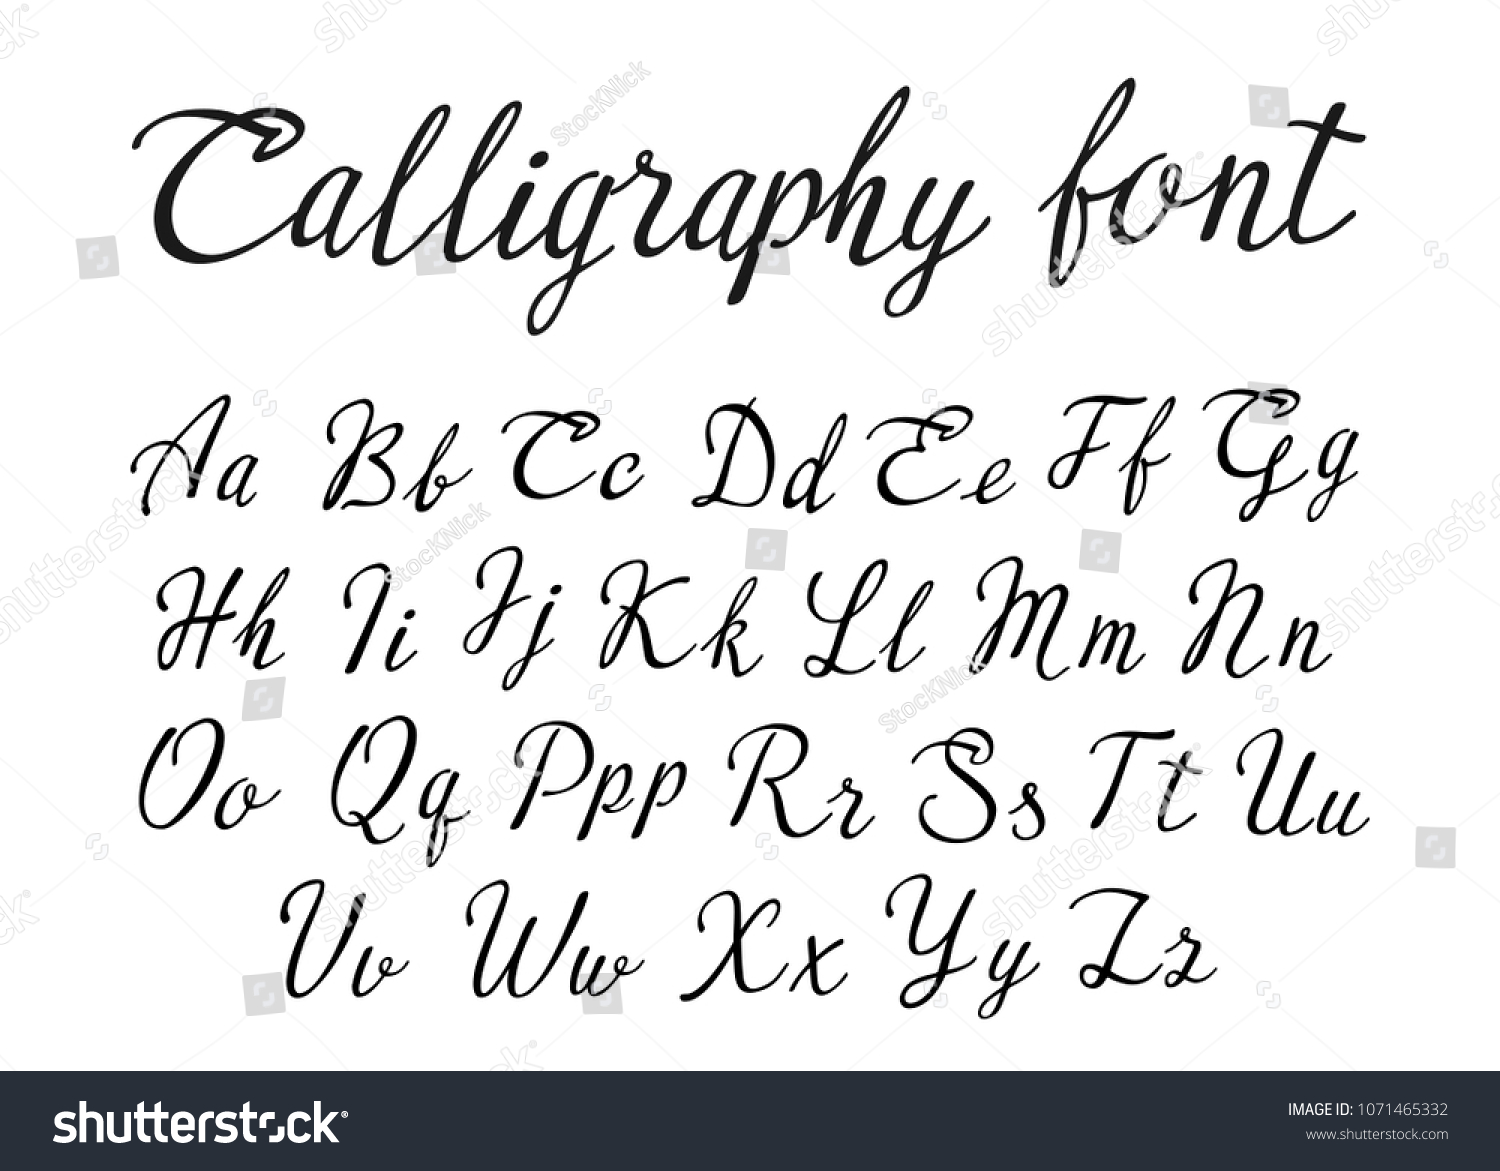 Vector Handwritten Lettering Alphabet Calligraphic Font Stock Vector ...